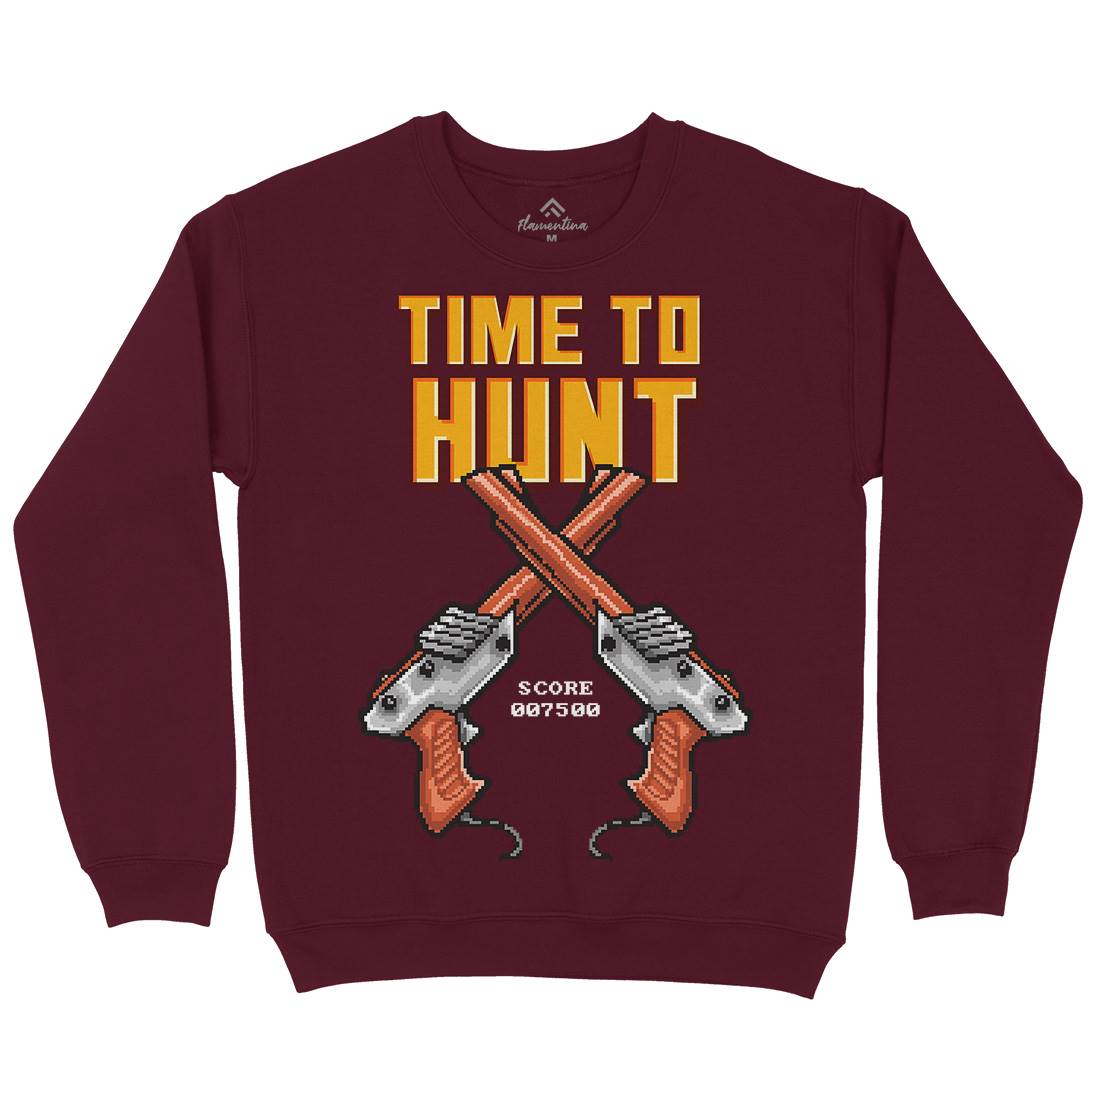 Time To Hunt Kids Crew Neck Sweatshirt Geek B971